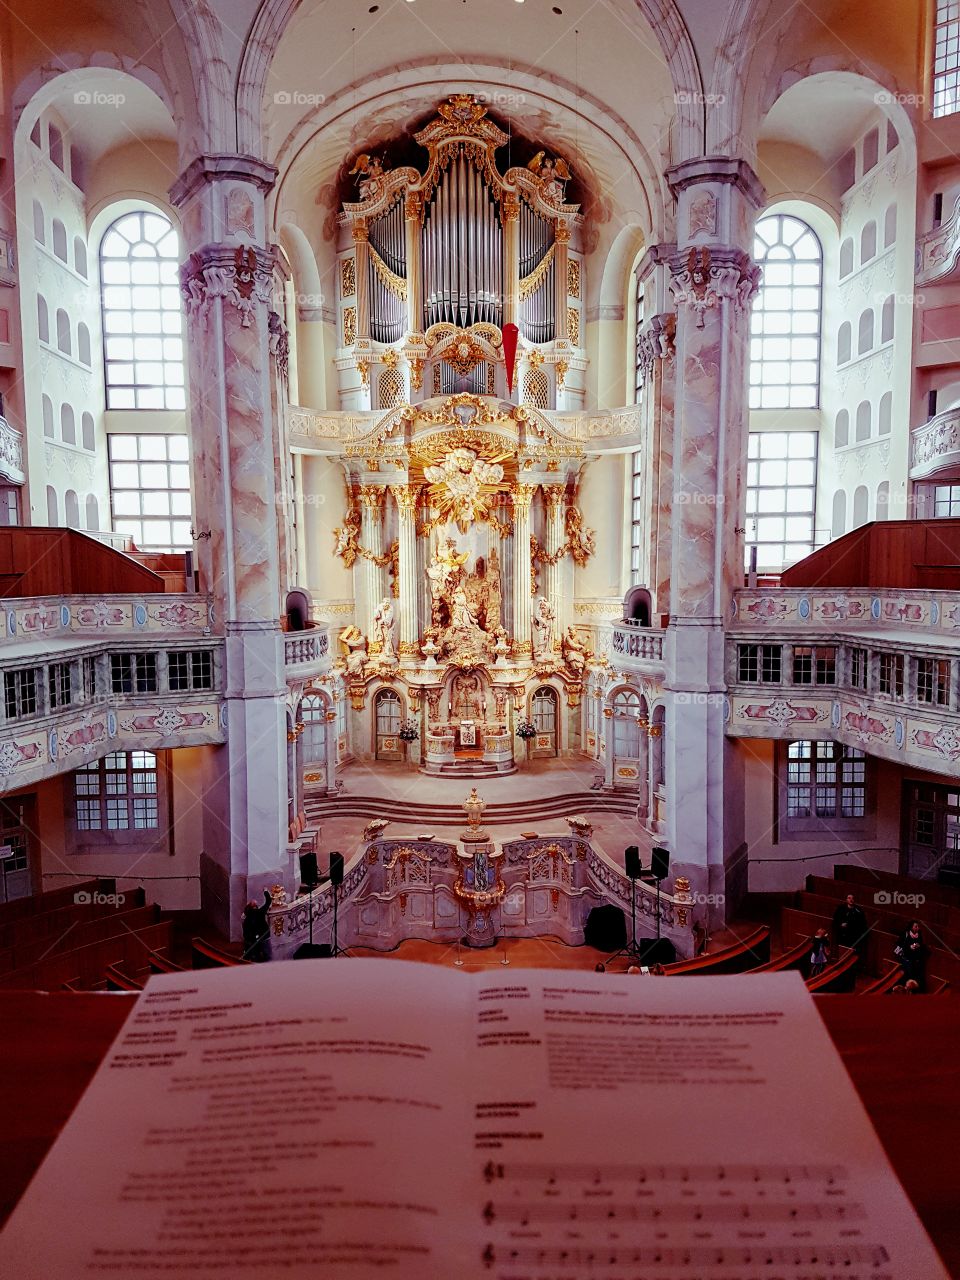 Das Heiligtum der Frauenkirche - die Wunderkraft der Orgelkunst in goldenem Antlitz